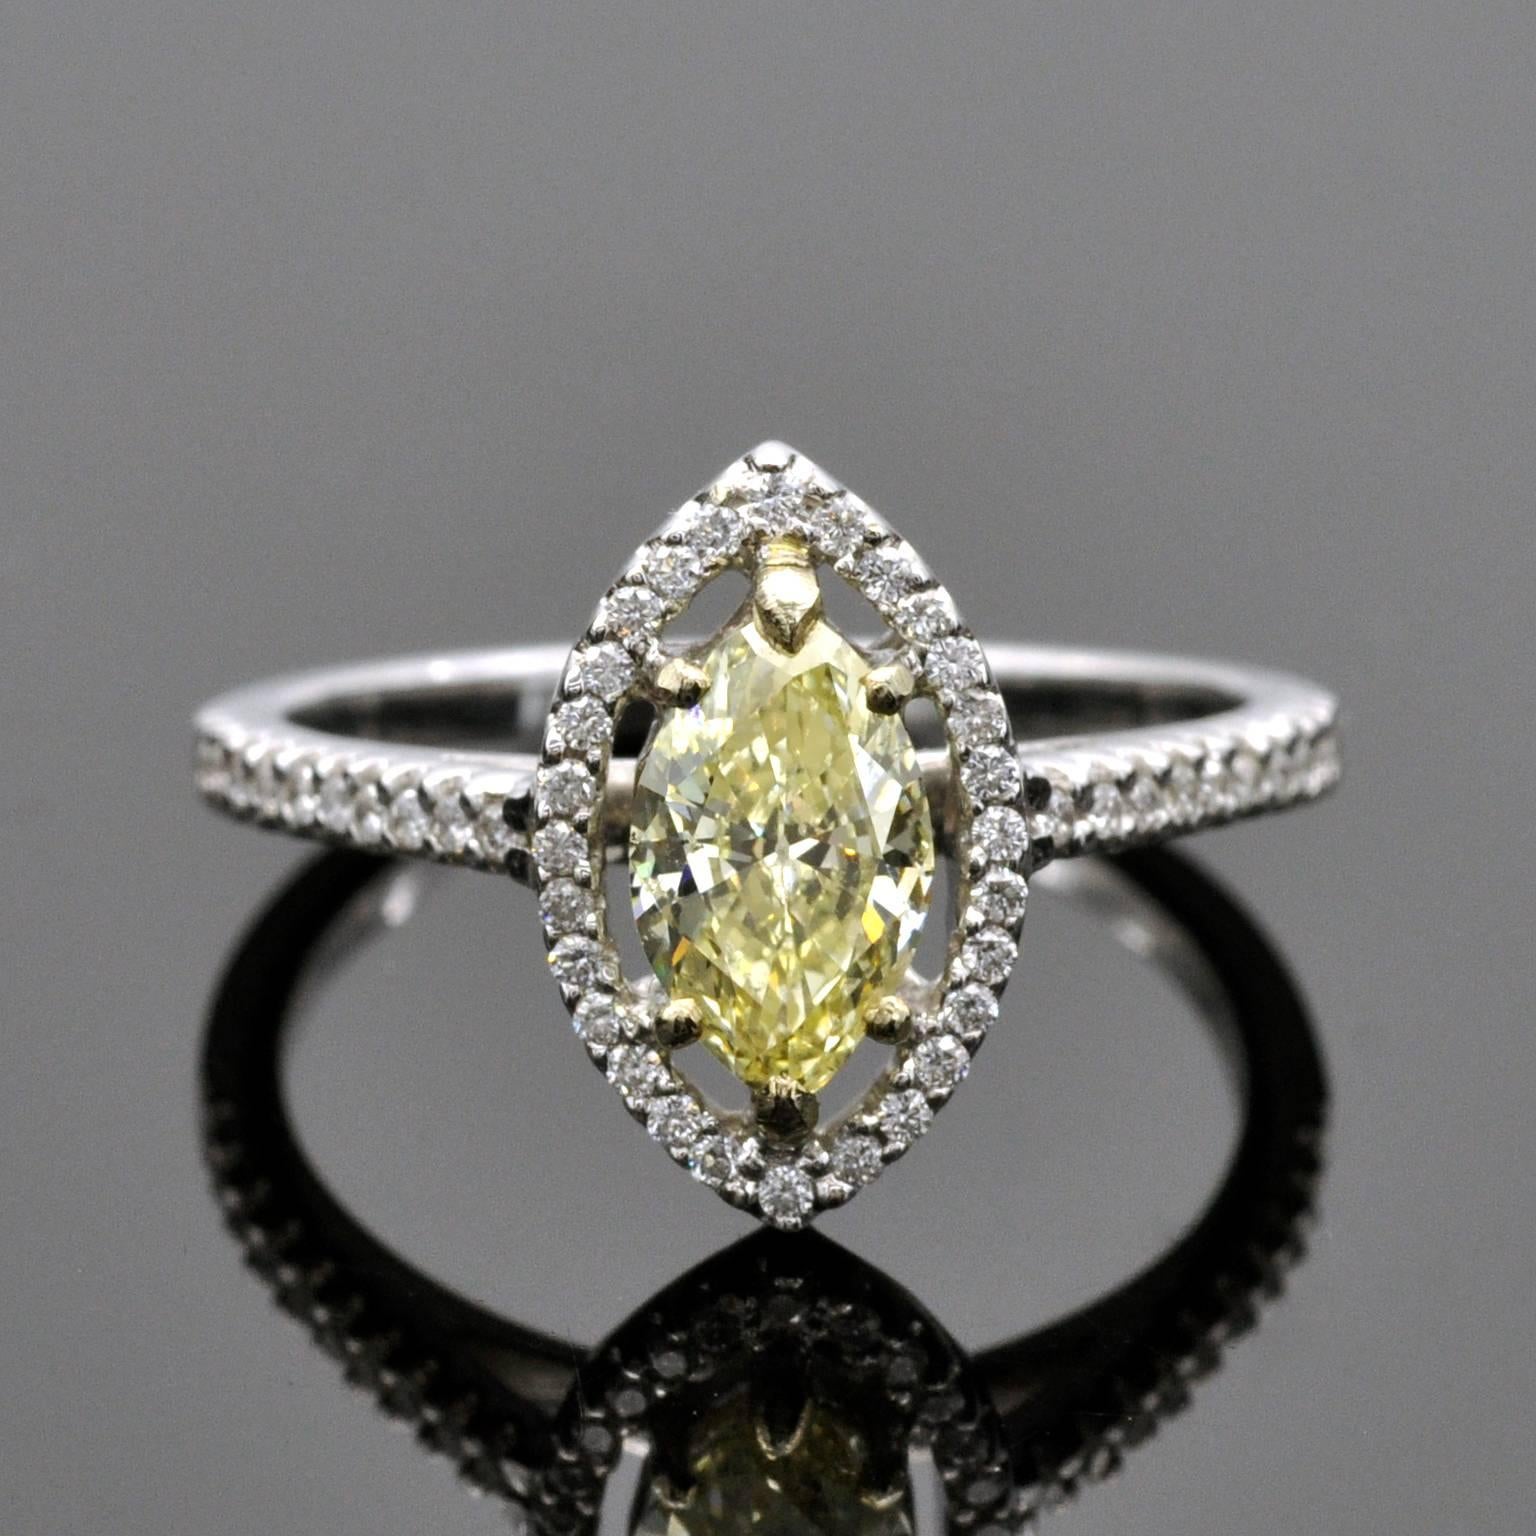 Der zentrale Diamant, ein 0,79 Karat schwerer Diamant im Marquiseschliff, ist in einen zeitlosen Halo-Ring aus 18 Kt. Weißgold gefasst und wird mit einem Zertifikat des angesehenen HRD-Labors in Belgien geliefert.
Der Ring ist in neuwertigem Zustand